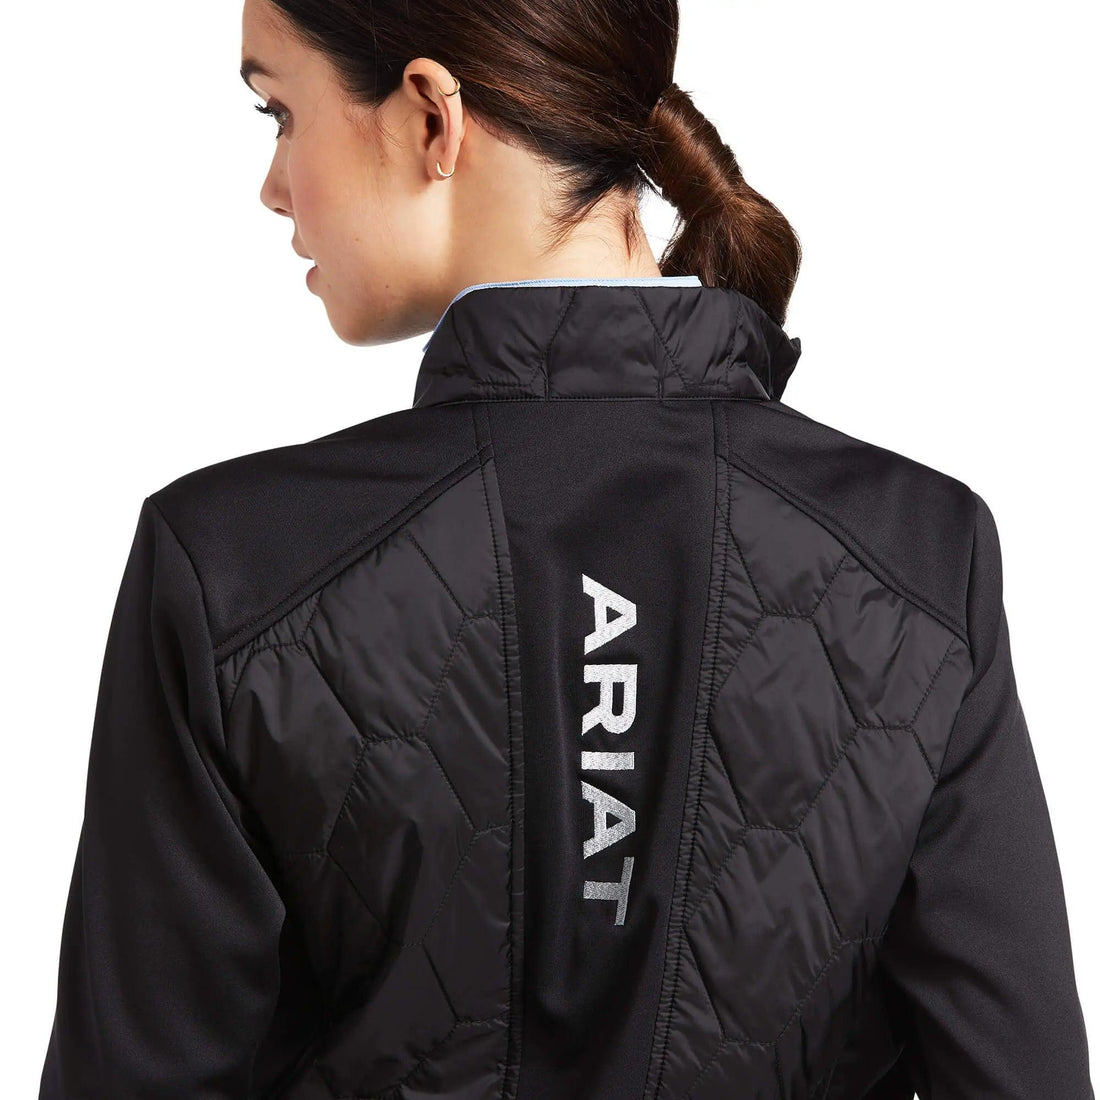 Ariat fusion insulated jacket ladies Ariat